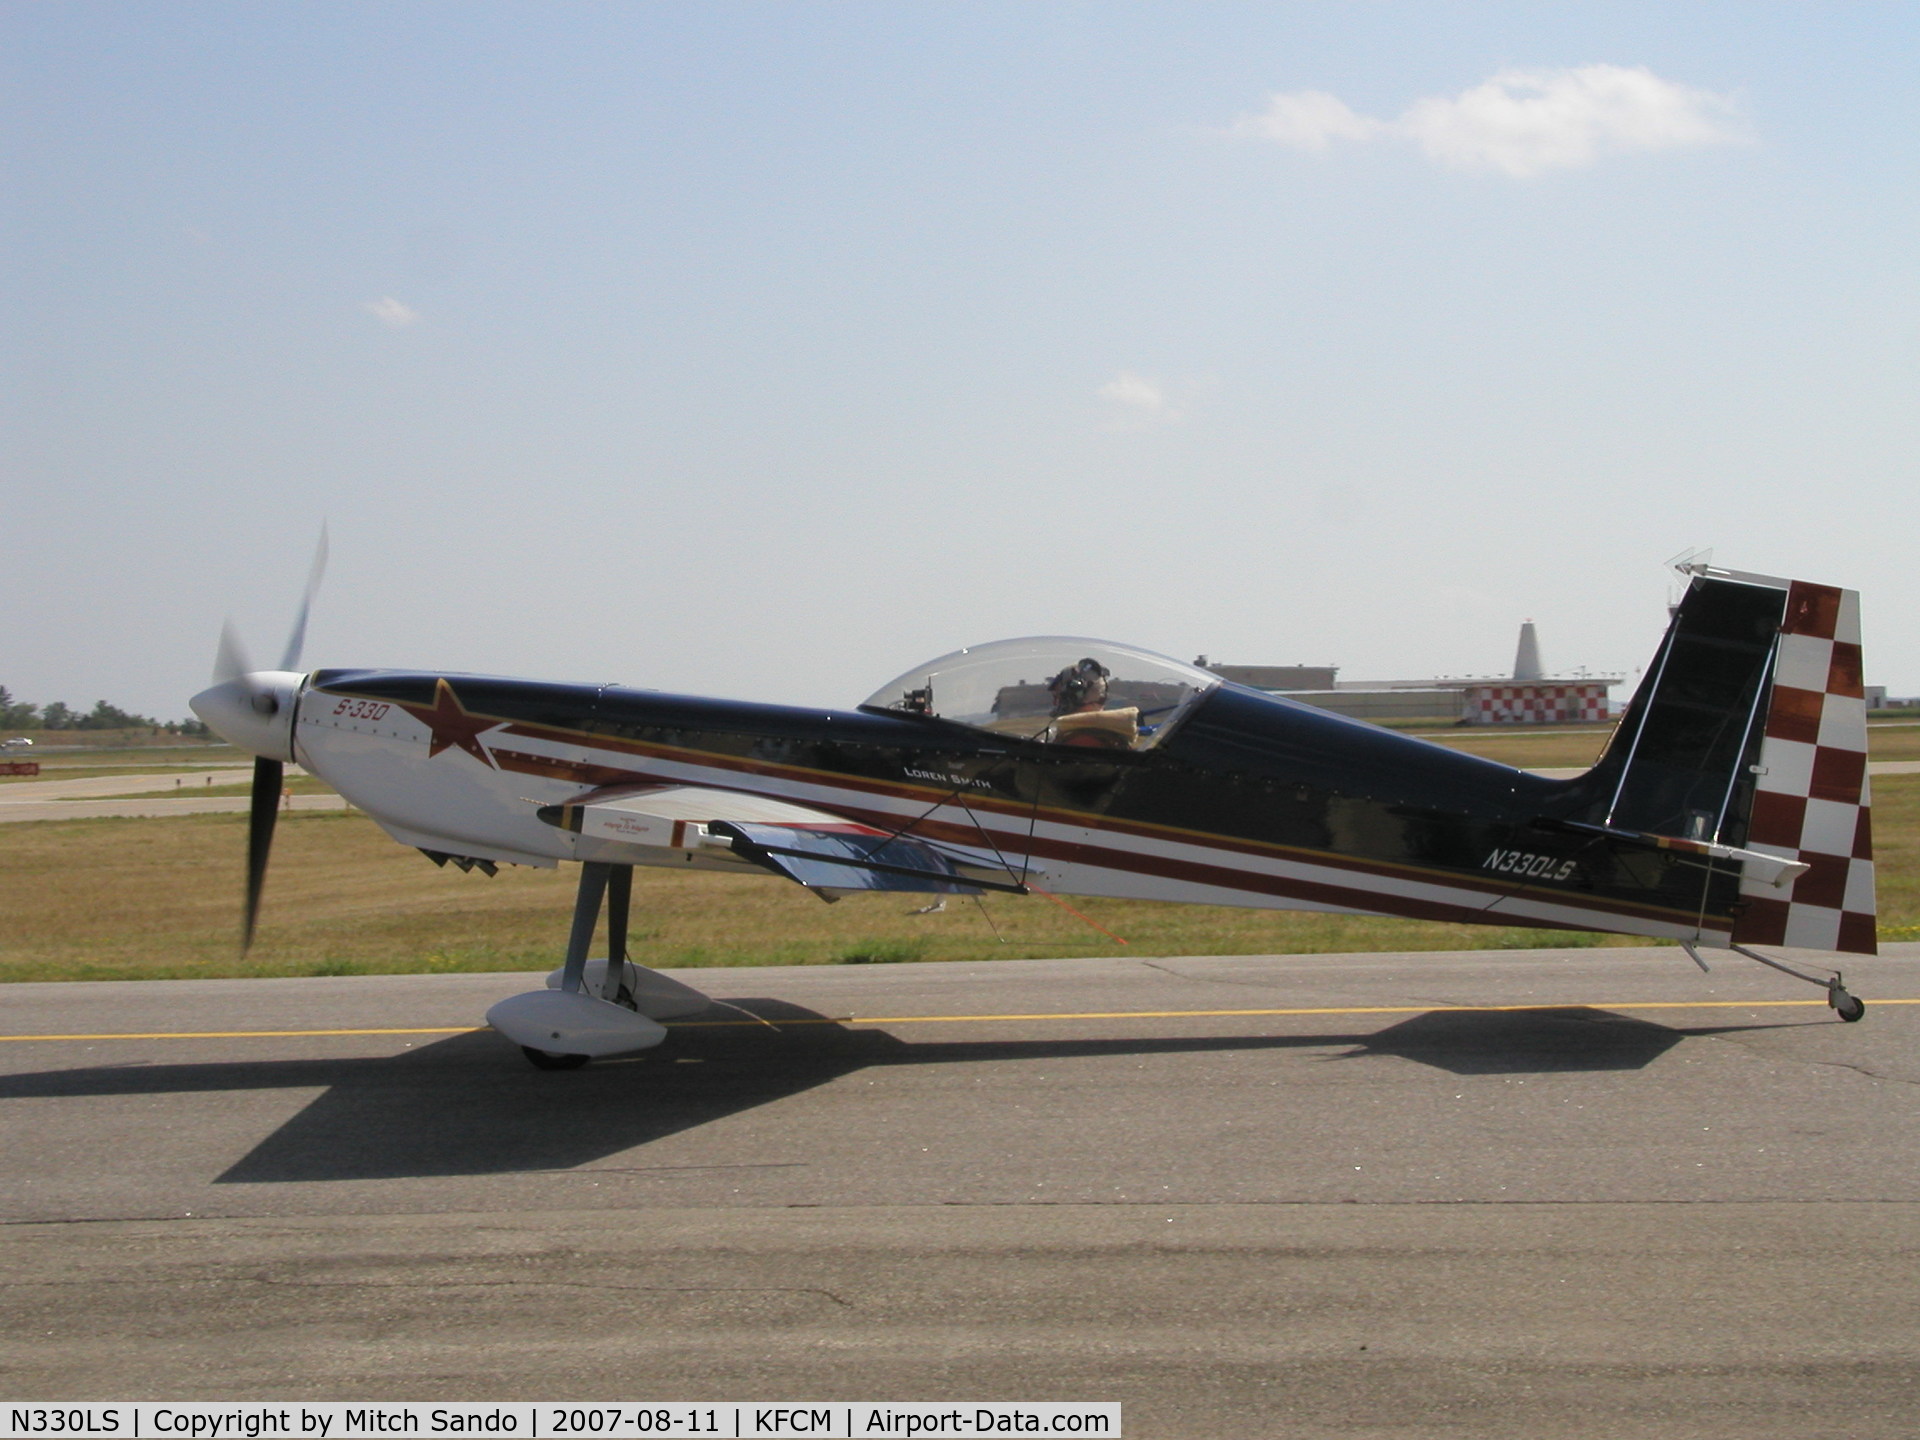 N330LS, 2000 Panzl S-330P C/N 001, Taxiing to Runway 28R.